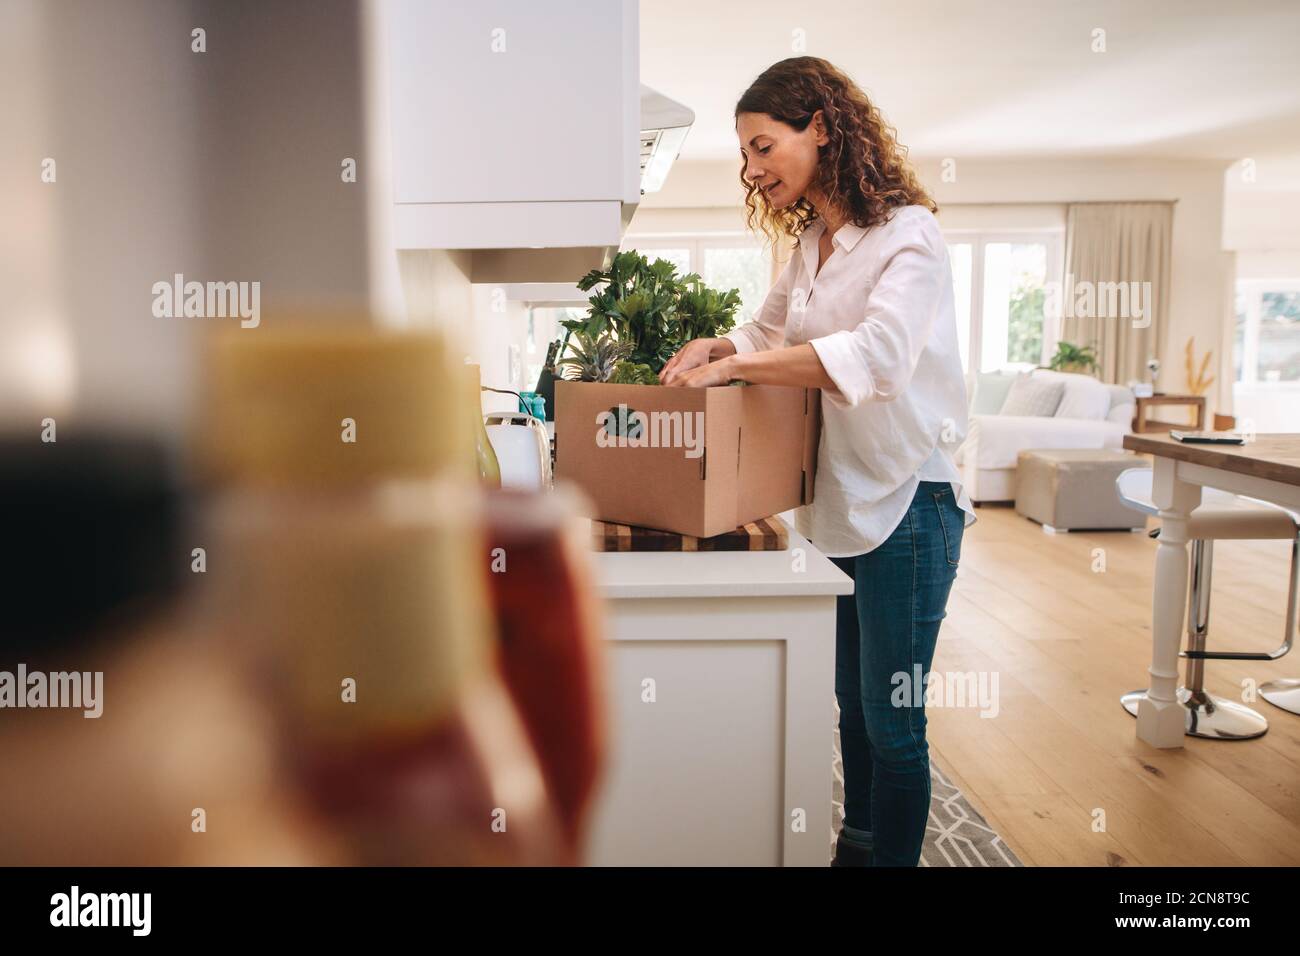 Frau, die in der Schachtel mit Lebensmitteln von der Lieferung in ihrer Küche. Frau steht in der Küche und überprüft die Früchte und Gemüse in der Lieferbox. Stockfoto